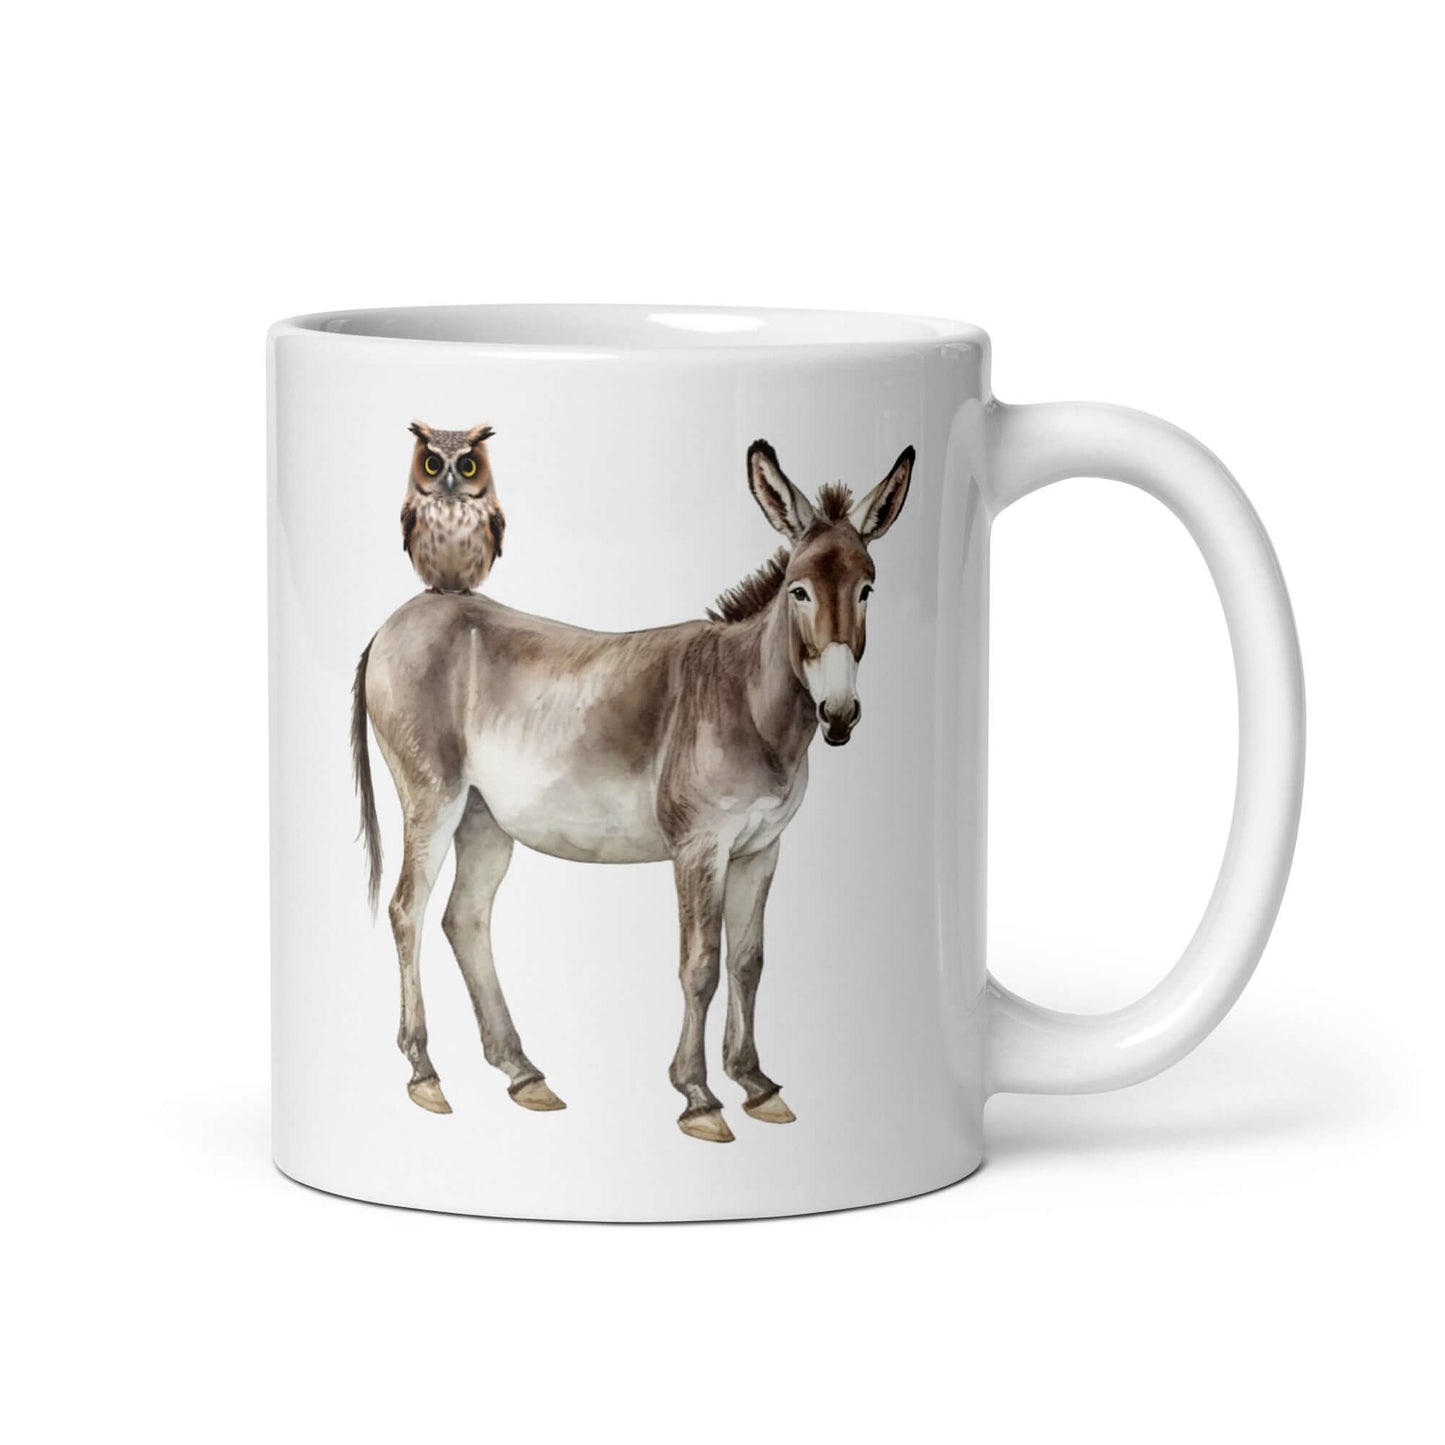 Donkey owl sarcastic pun mug